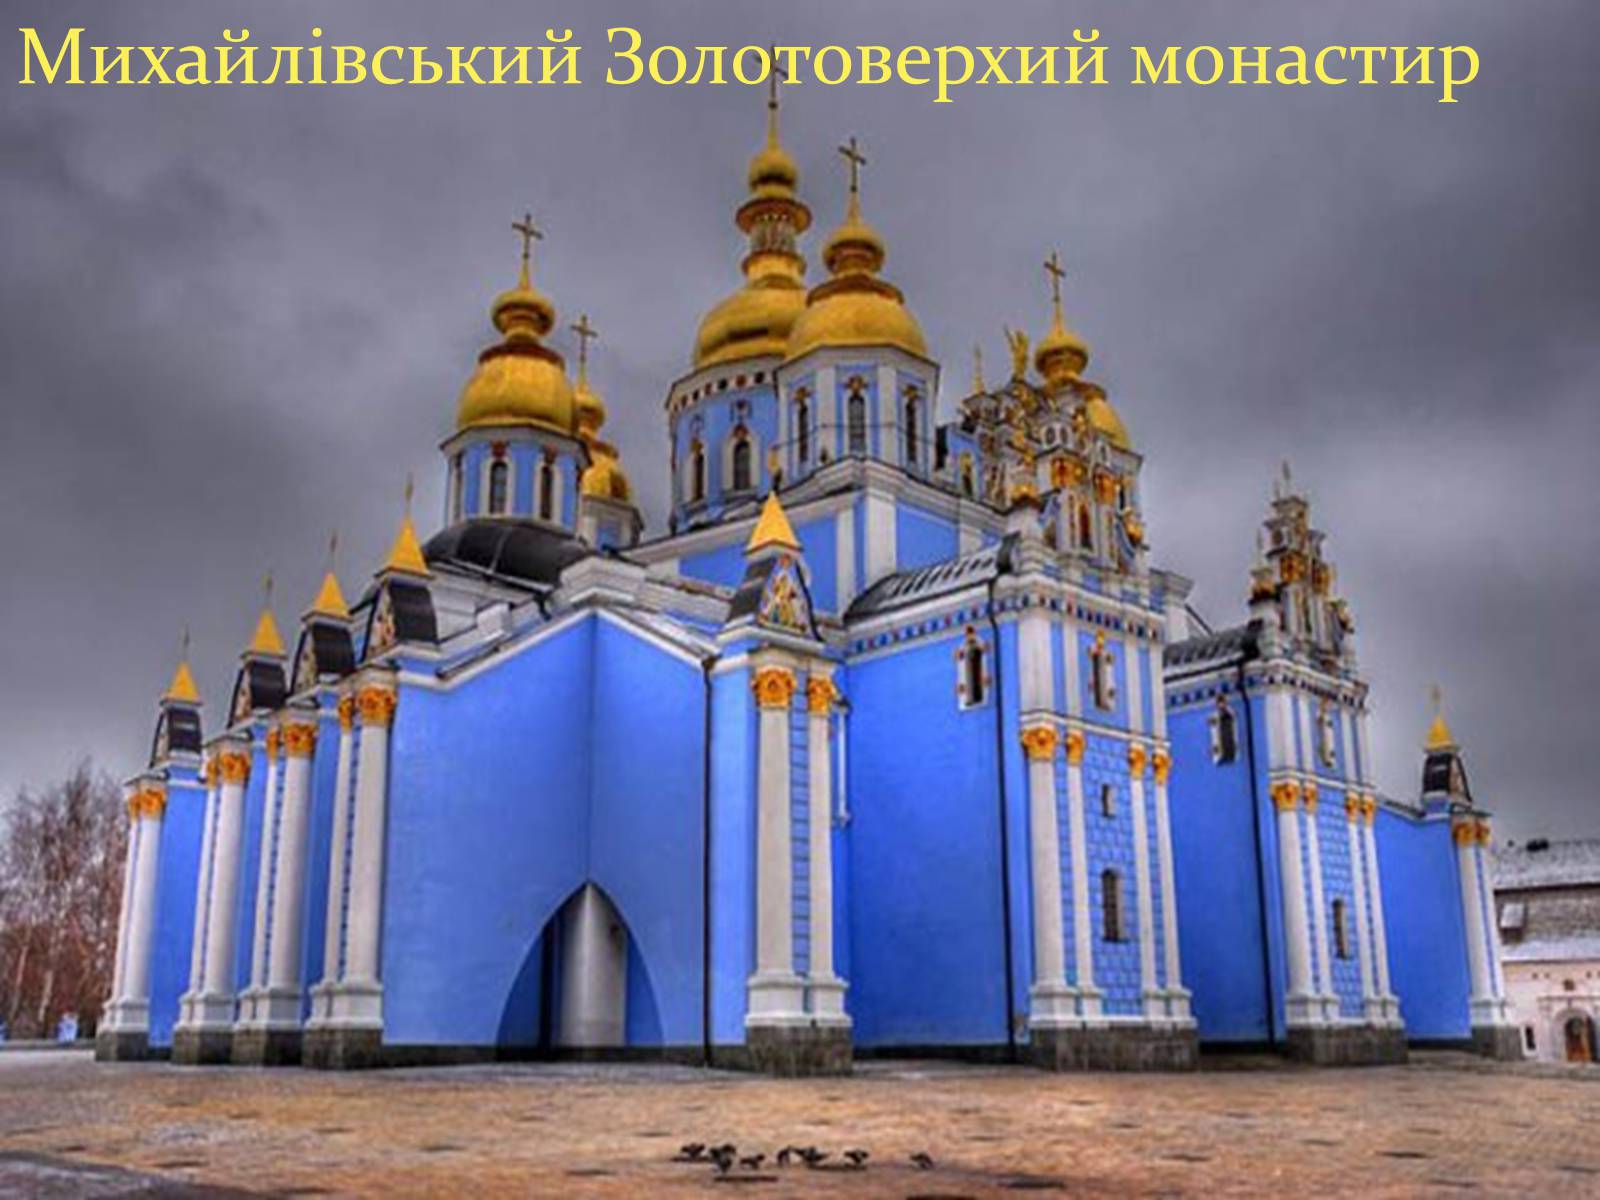 Самый известный российский храм. Свято-Михайловский Златоверхий монастырь в Киеве.